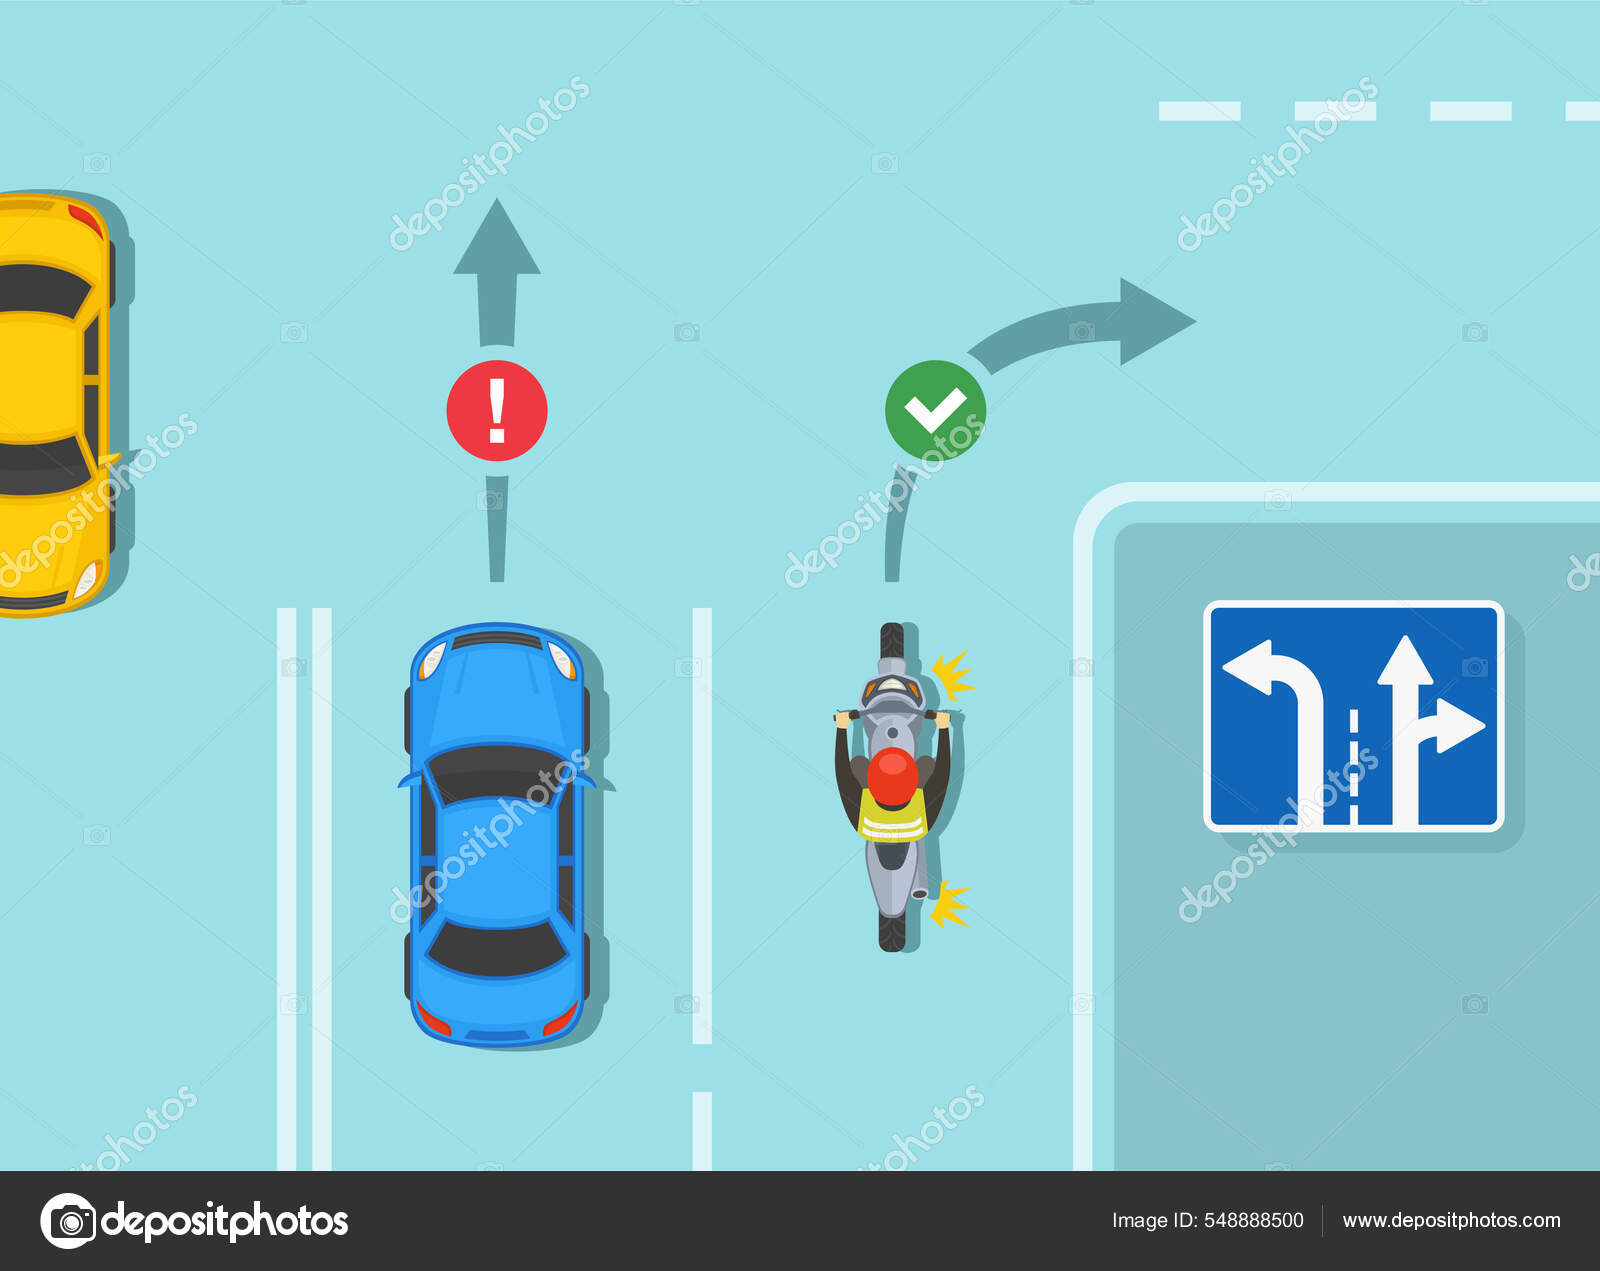 Banco de imagens : Pista, estrada, rua, carro, vermelho, veículo